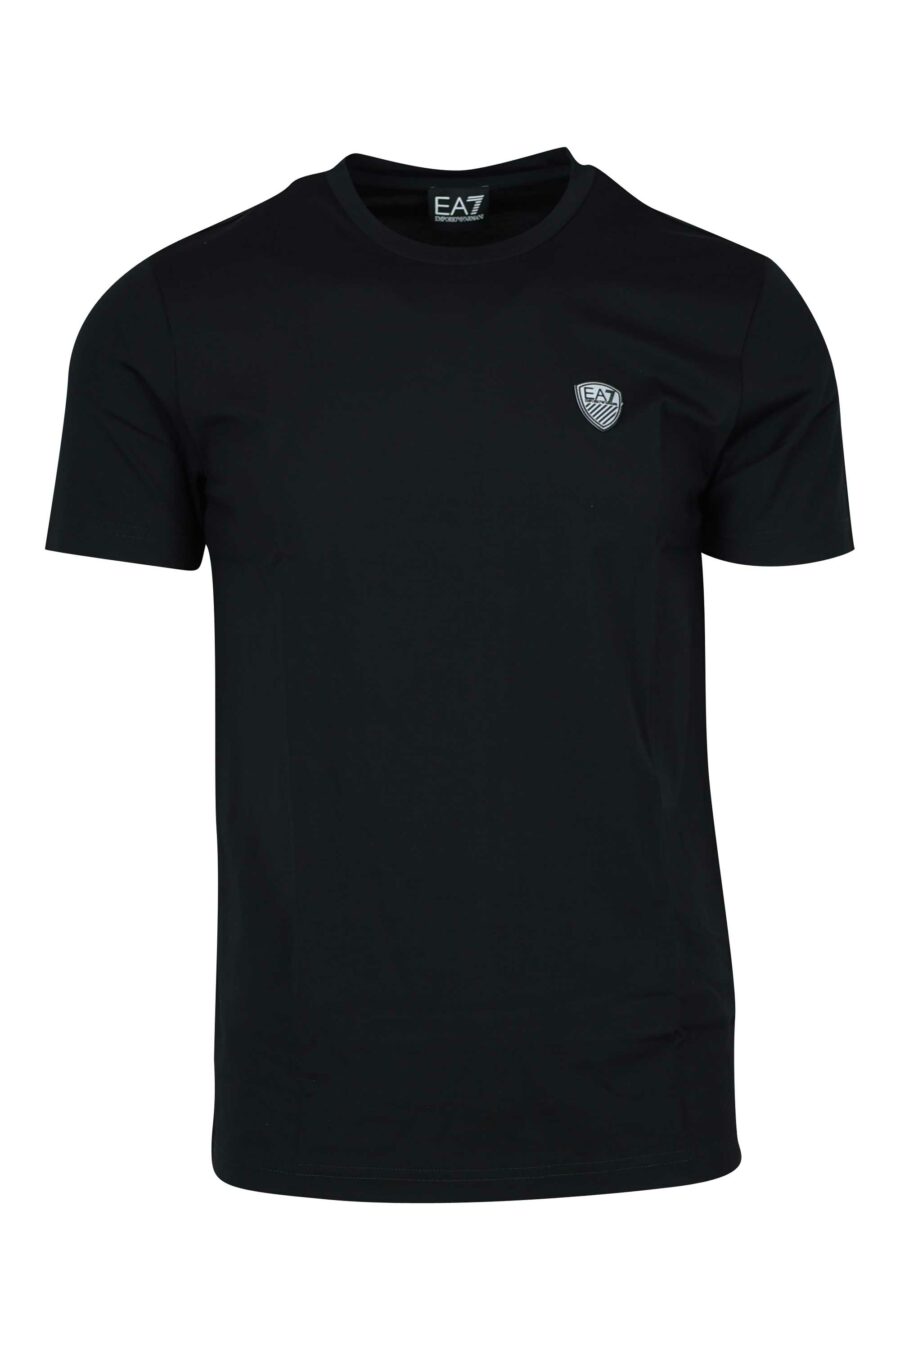 Camiseta negra con minilogo "lux identity" escudo - 8056787978973